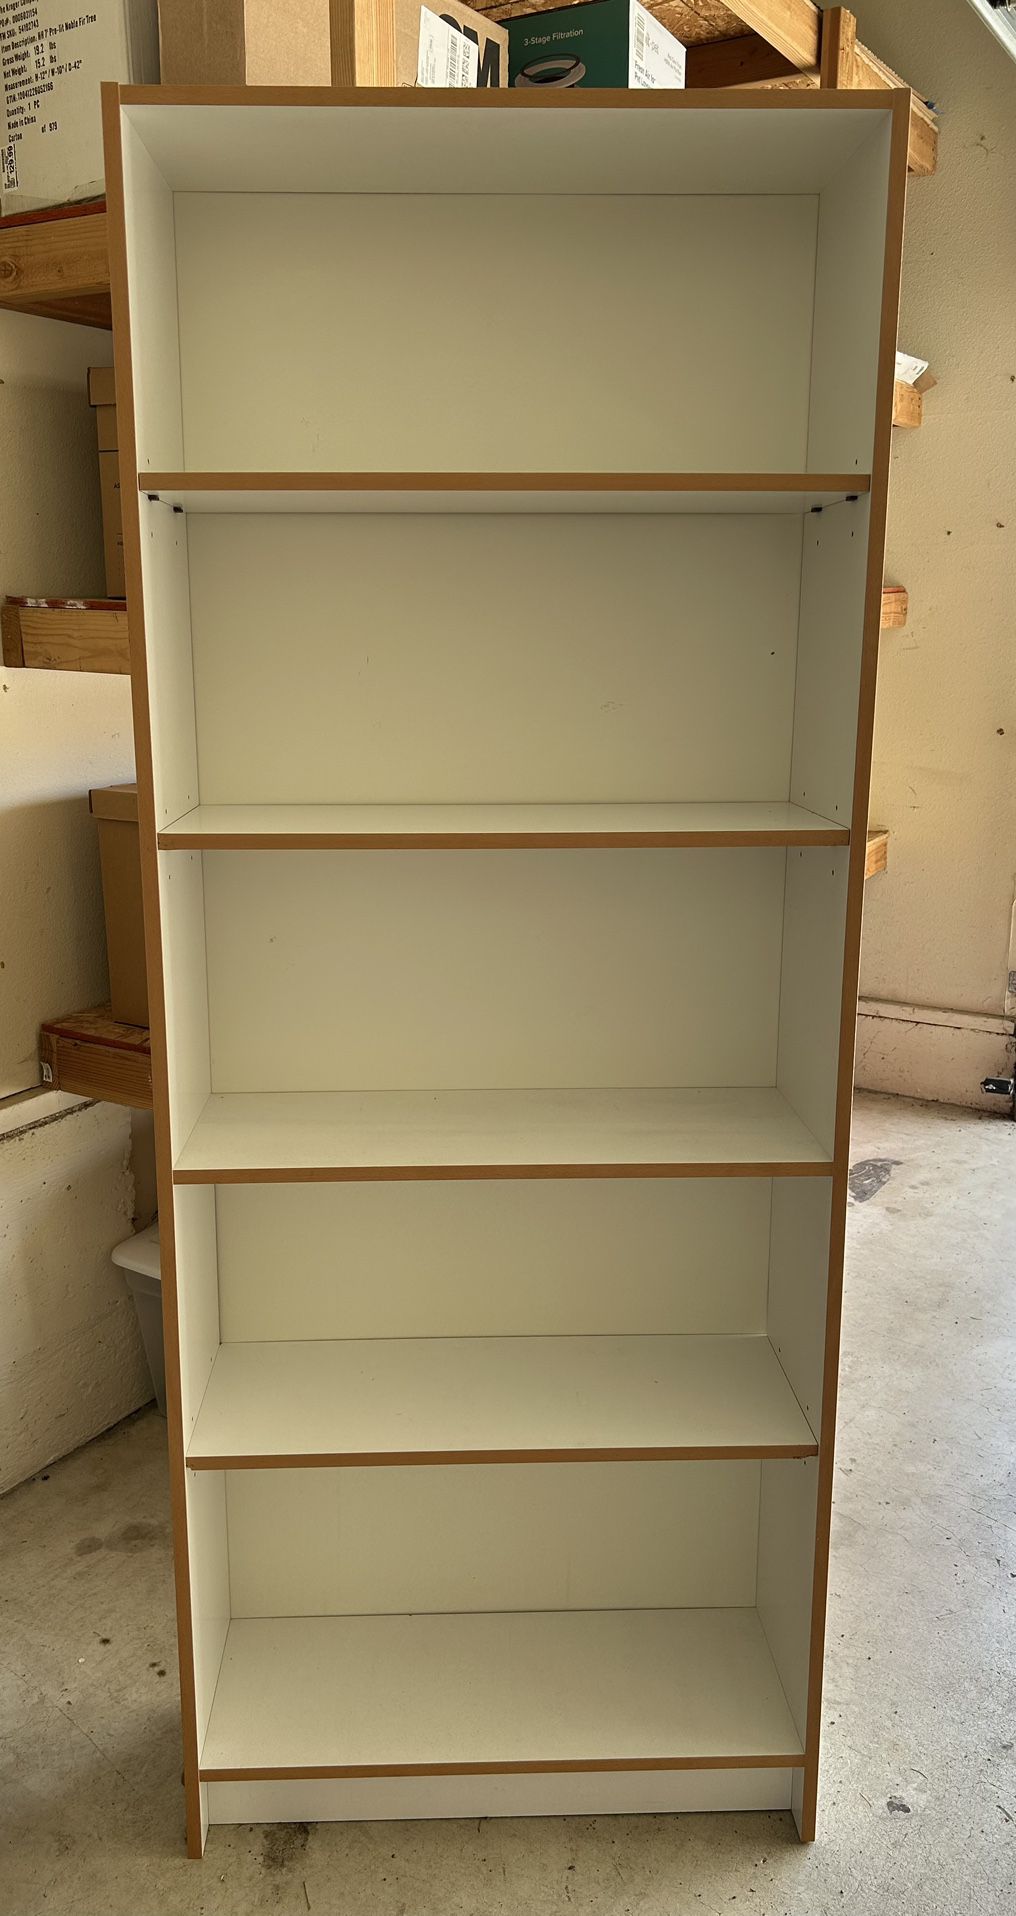 White Bookcase Bookshelf  